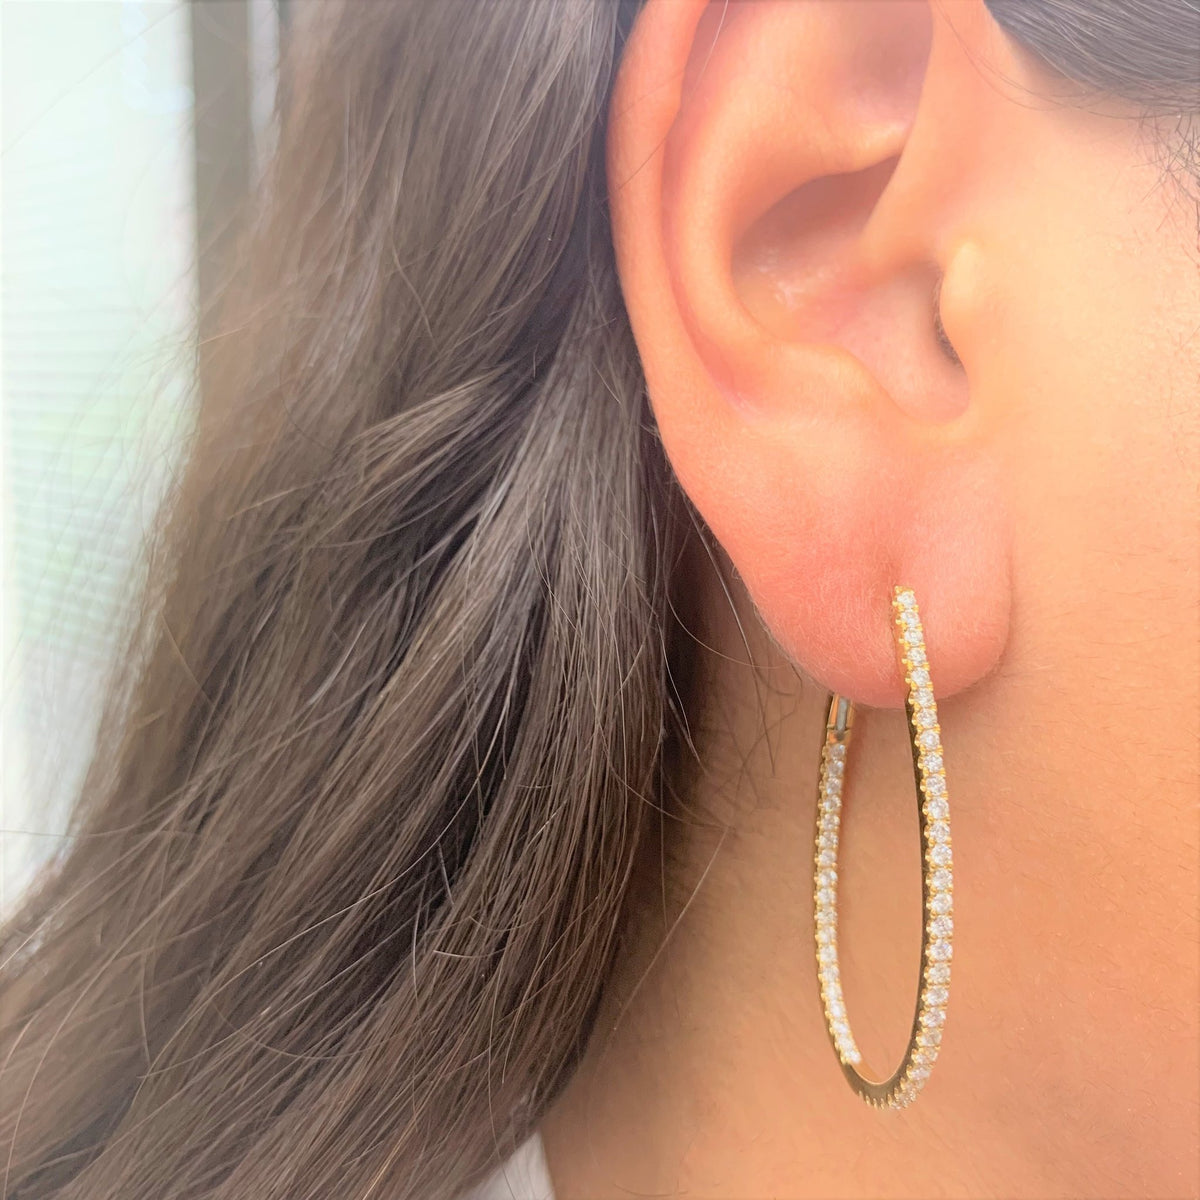 Inside Out Diamond Hoop Earrings in 14K White Gold 1.60 ctw